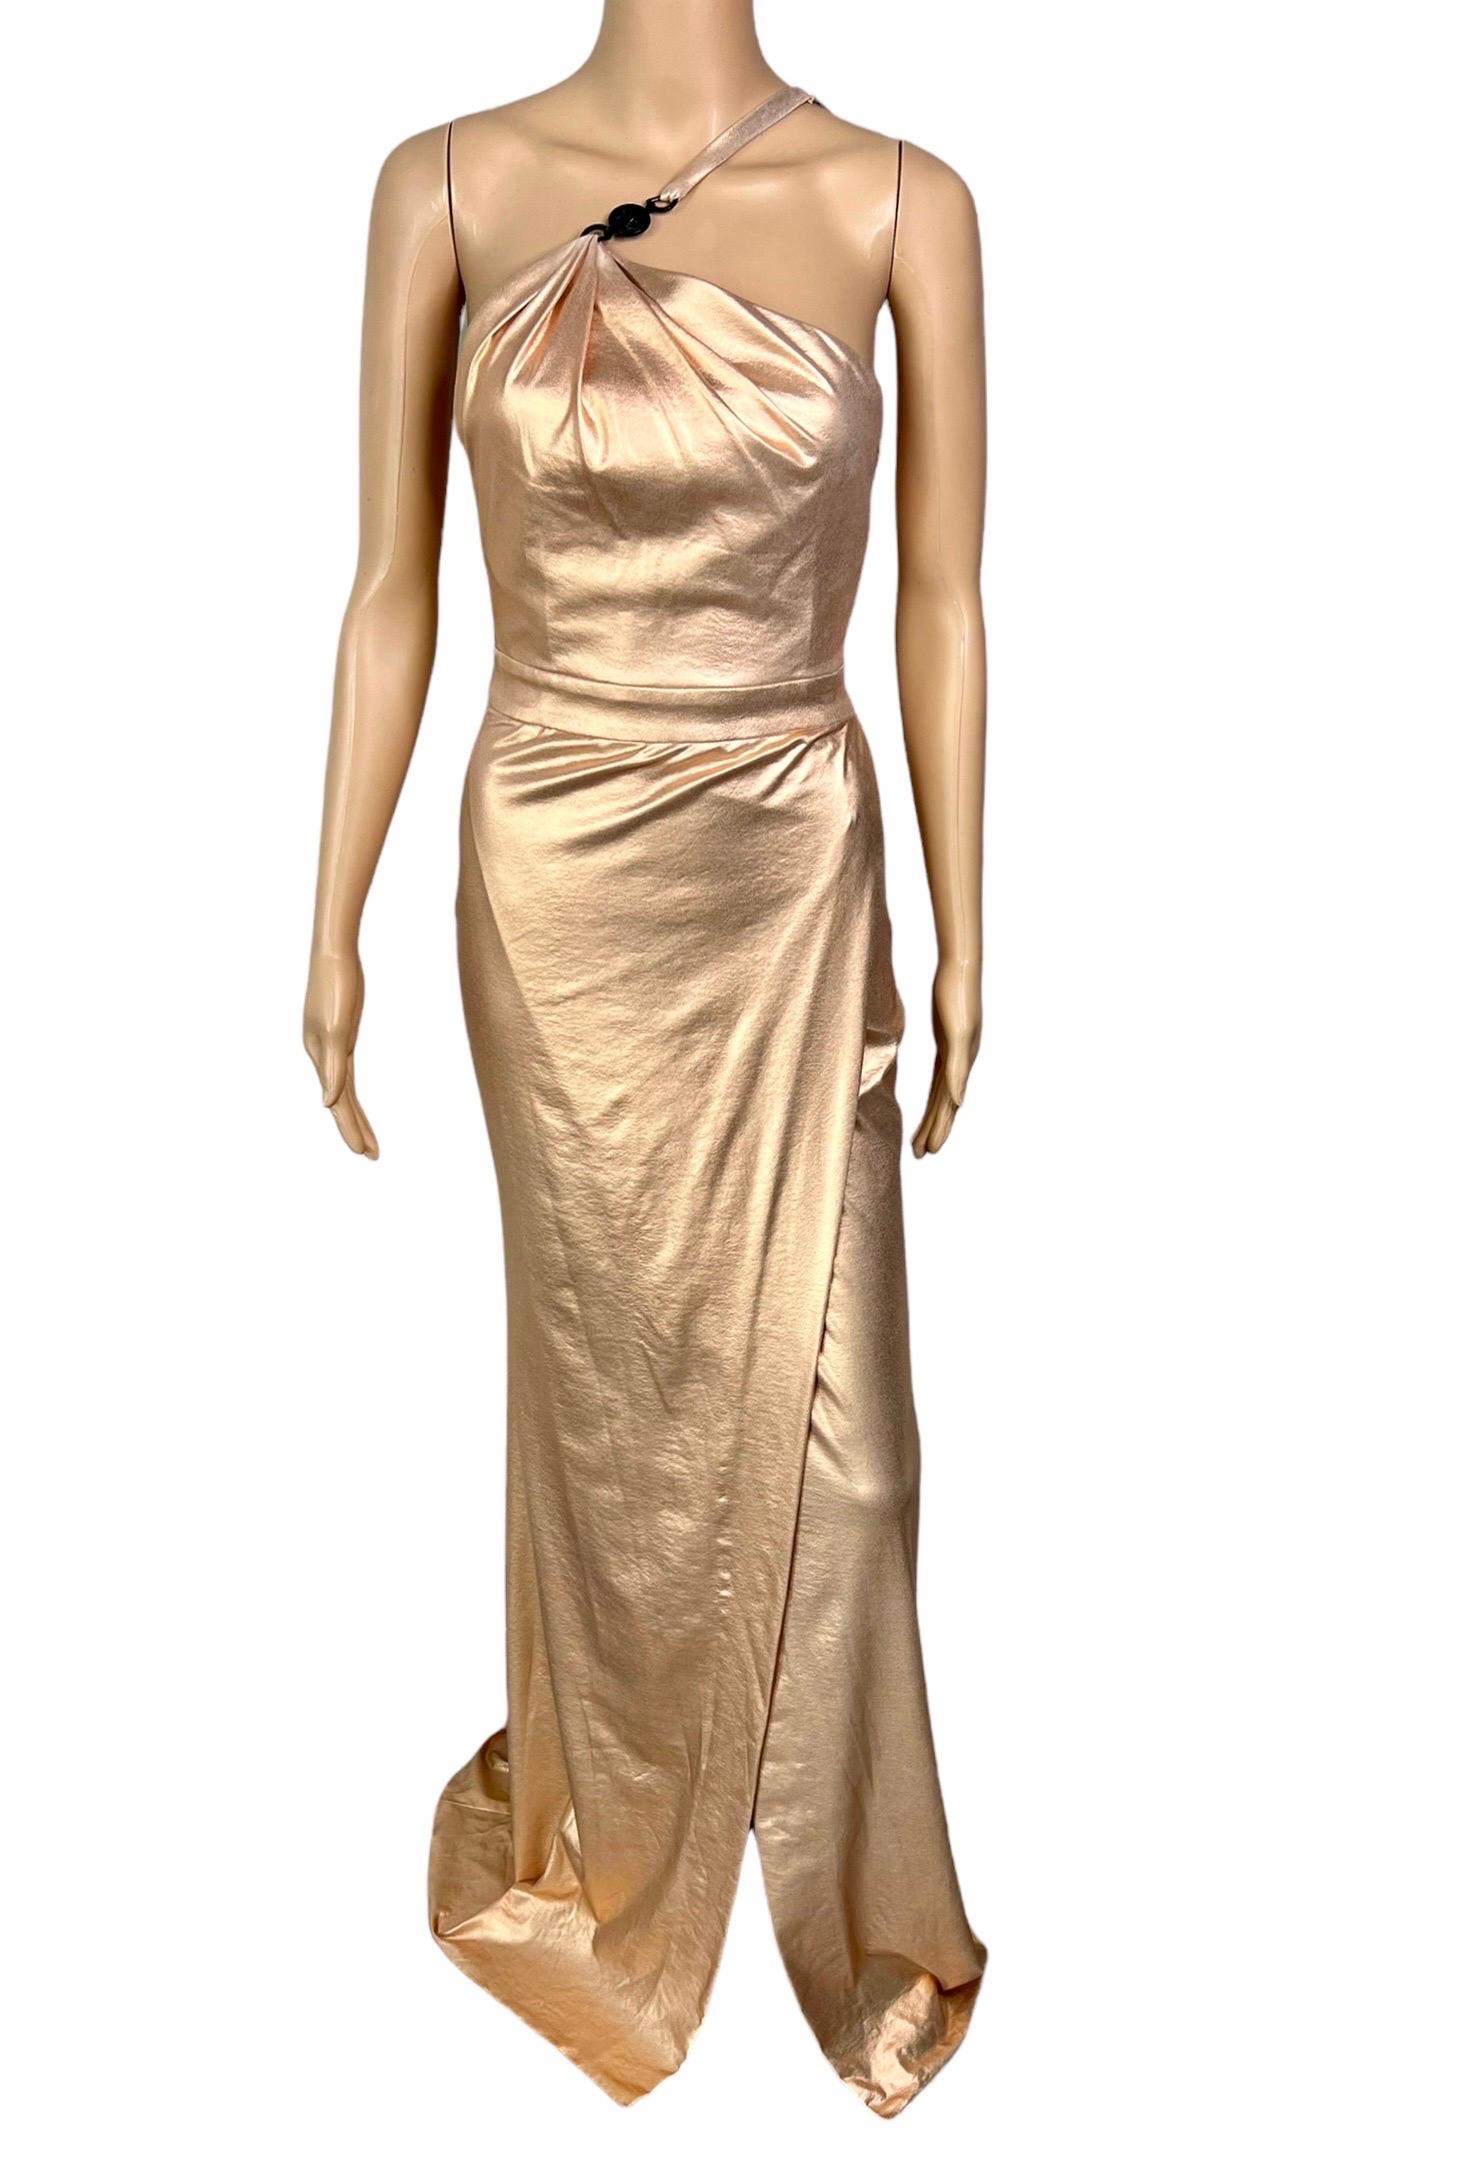 Versace c.2013 Wet Liquid Look Bodycon Metallic Rose Gold Evening Dress Gown For Sale 3